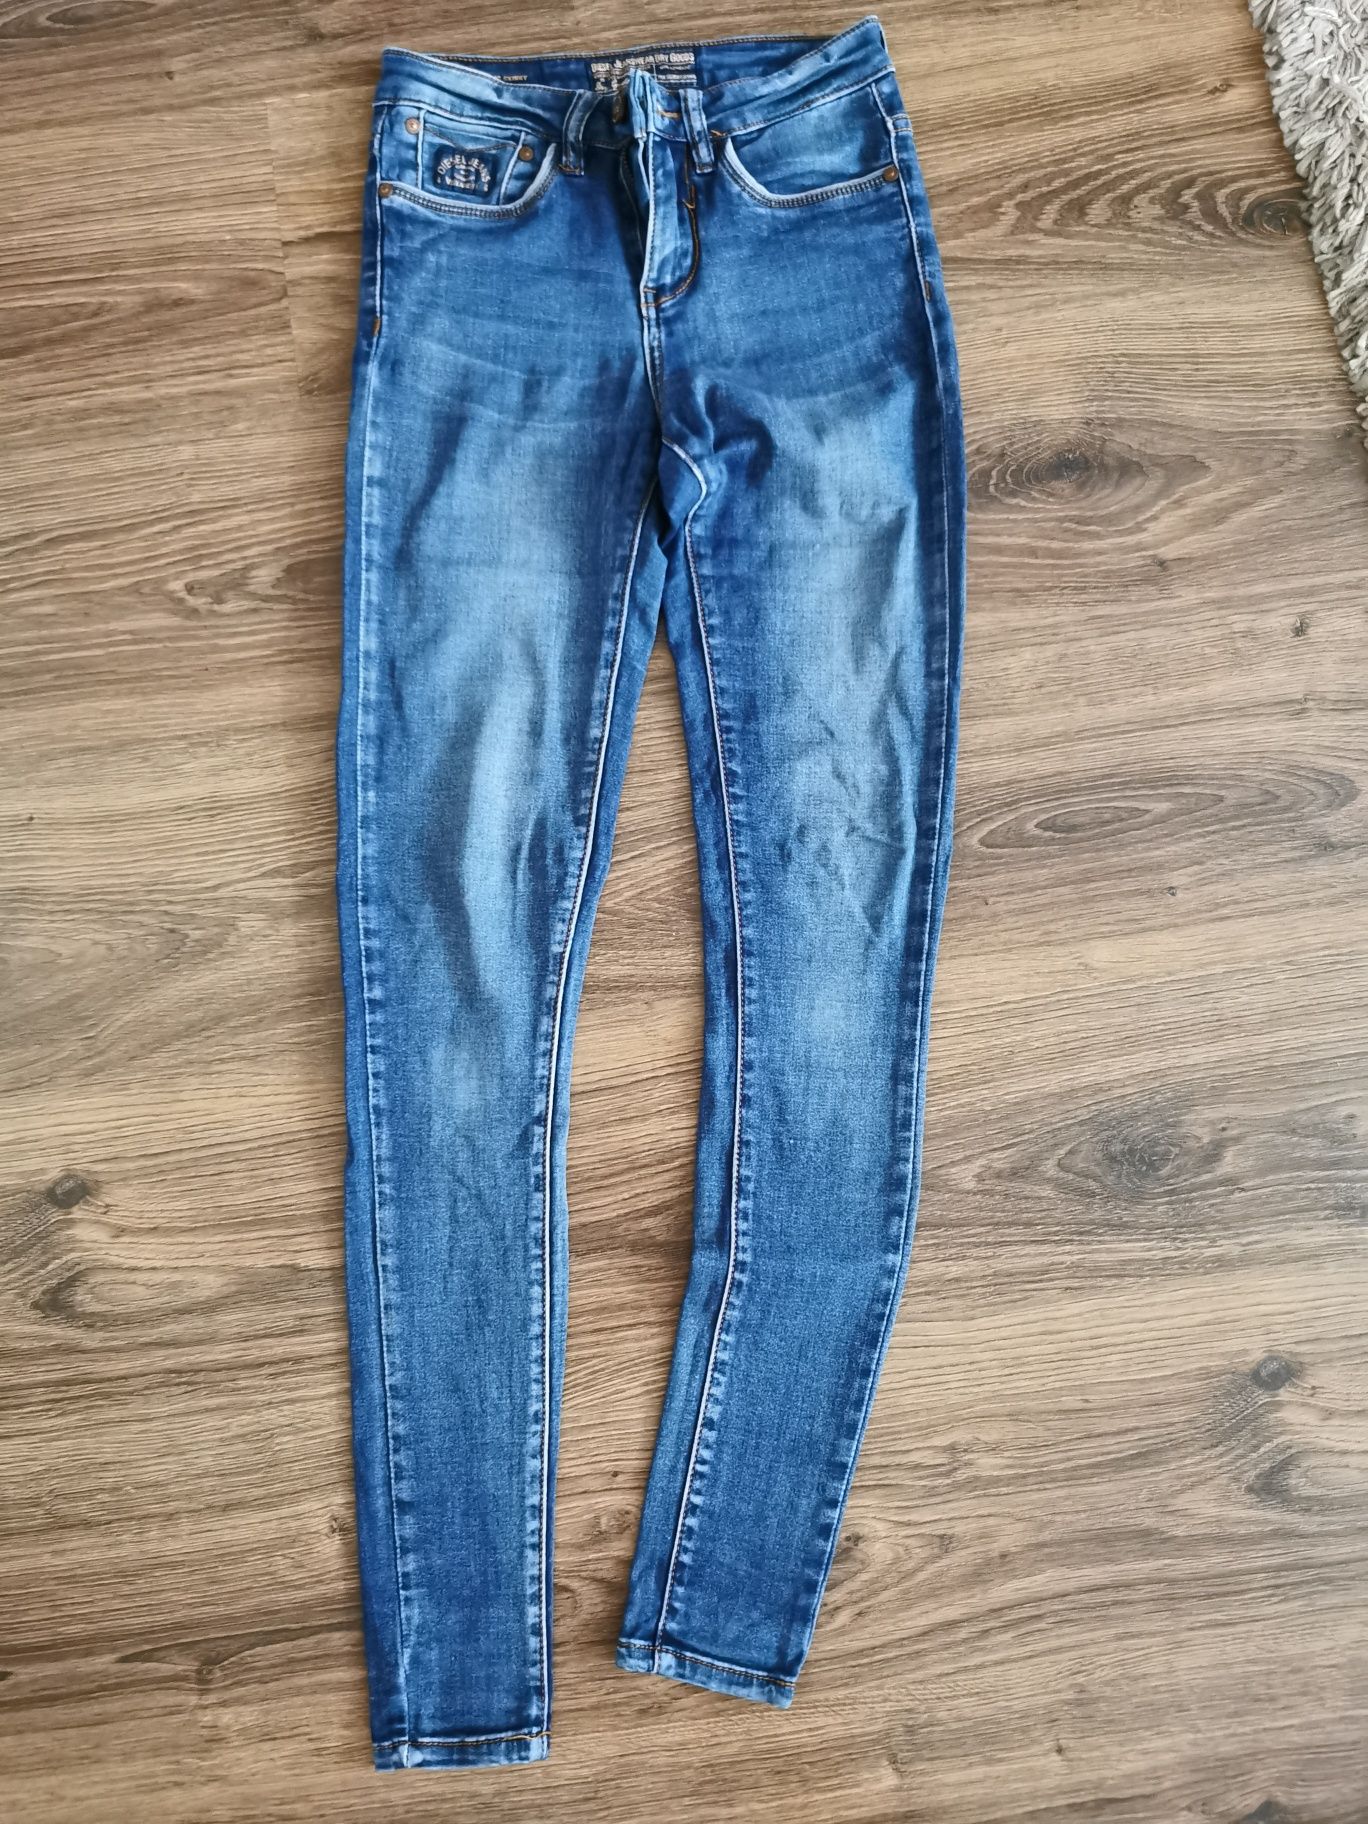 Spodnie jeans Diesel rozmiar 26/32